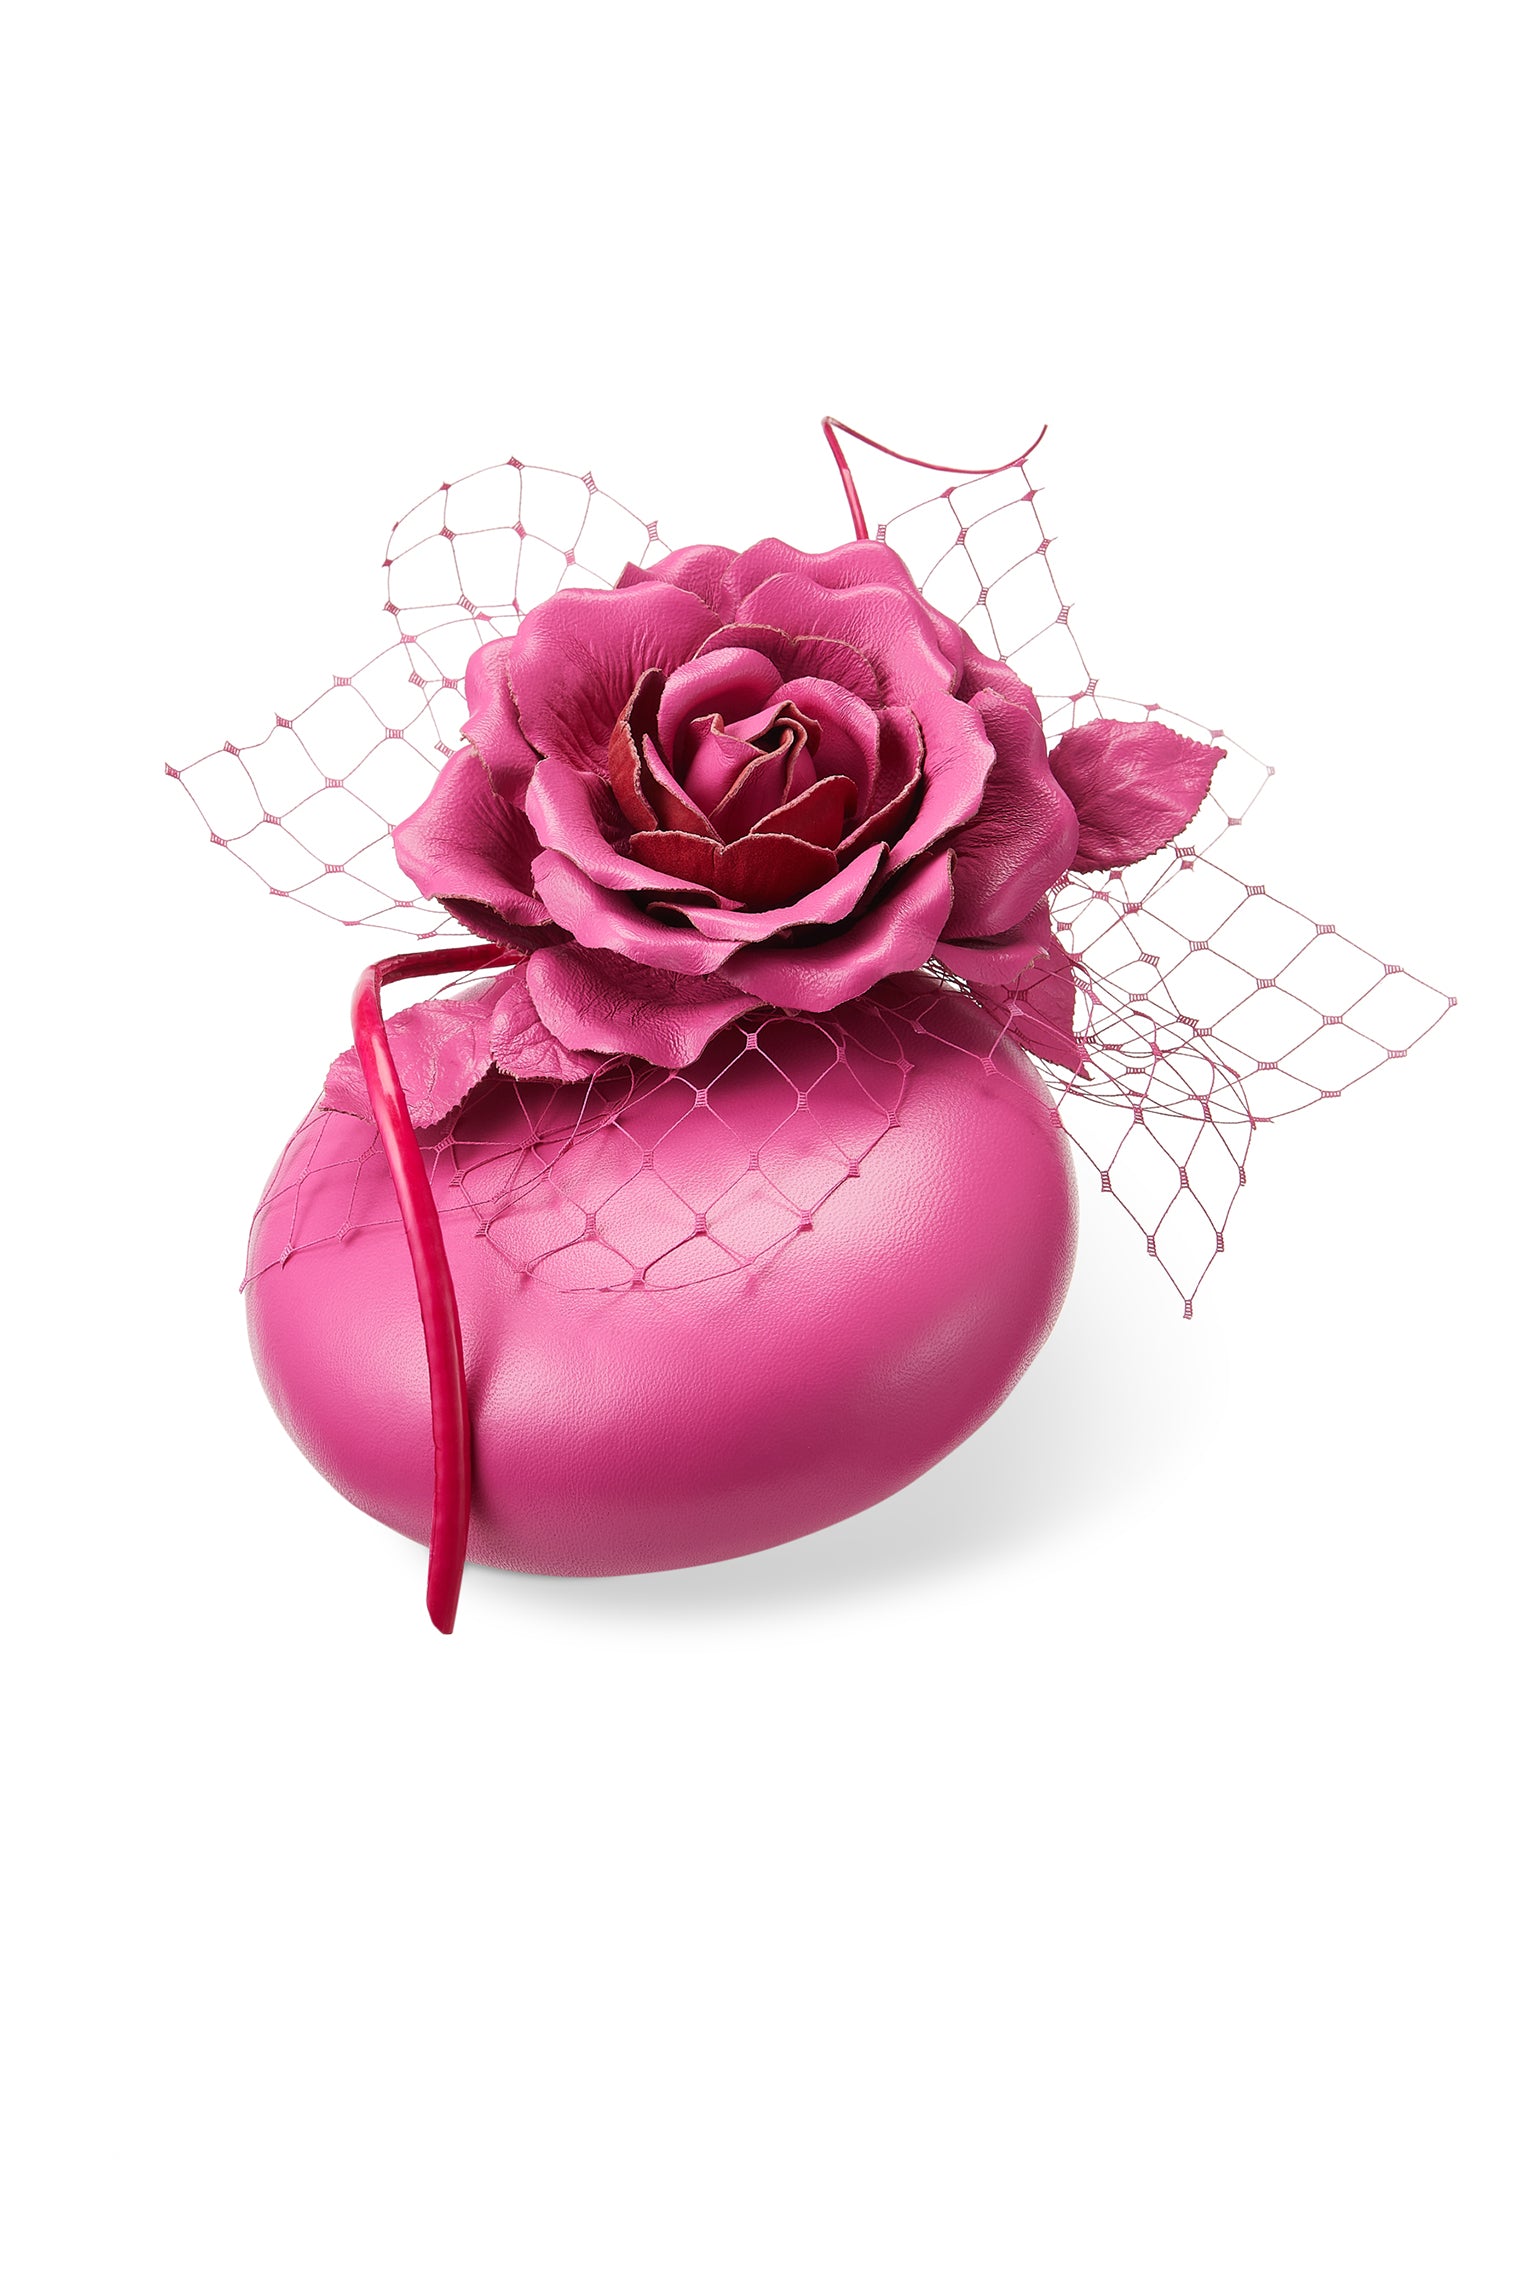 Rose Bud Pink Leather Percher Hat - New Season Women's Hats - Lock & Co. Hatters London UK